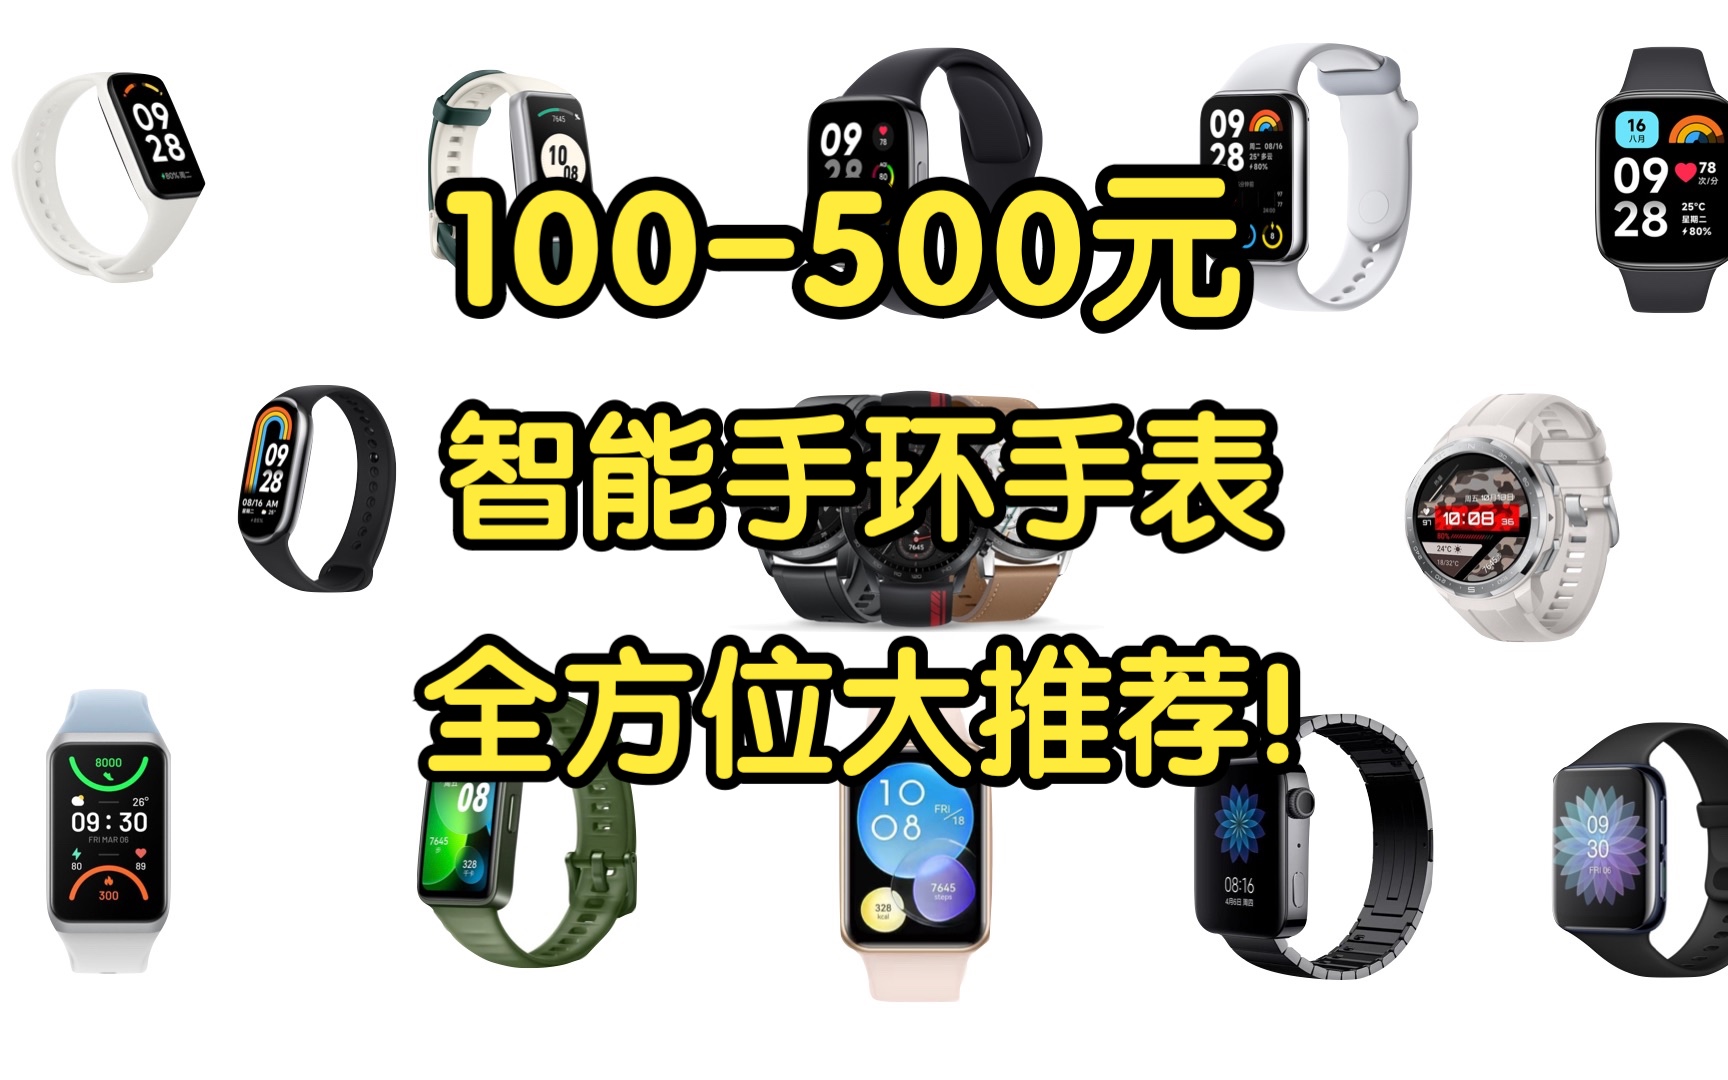 【Caibao】100-500元智能穿戴设备全方位大推荐！手环手表全新二手超全解说！性价比超高！学生党必看！